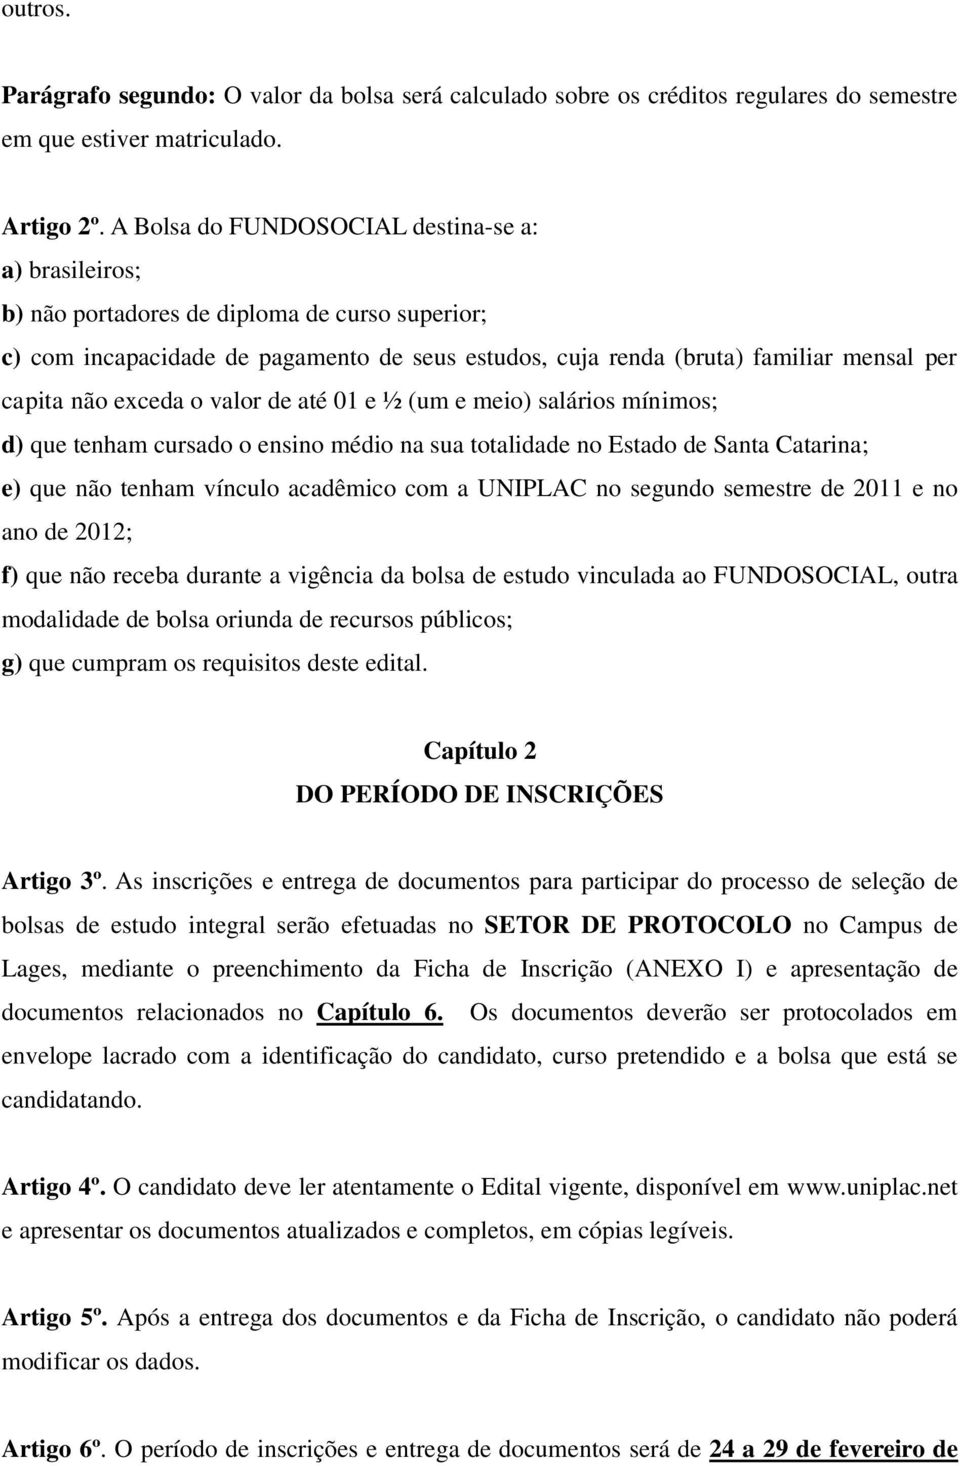 não exceda o valor de até 01 e ½ (um e meio) salários mínimos; d) que tenham cursado o ensino médio na sua totalidade no Estado de Santa Catarina; e) que não tenham vínculo acadêmico com a UNIPLAC no